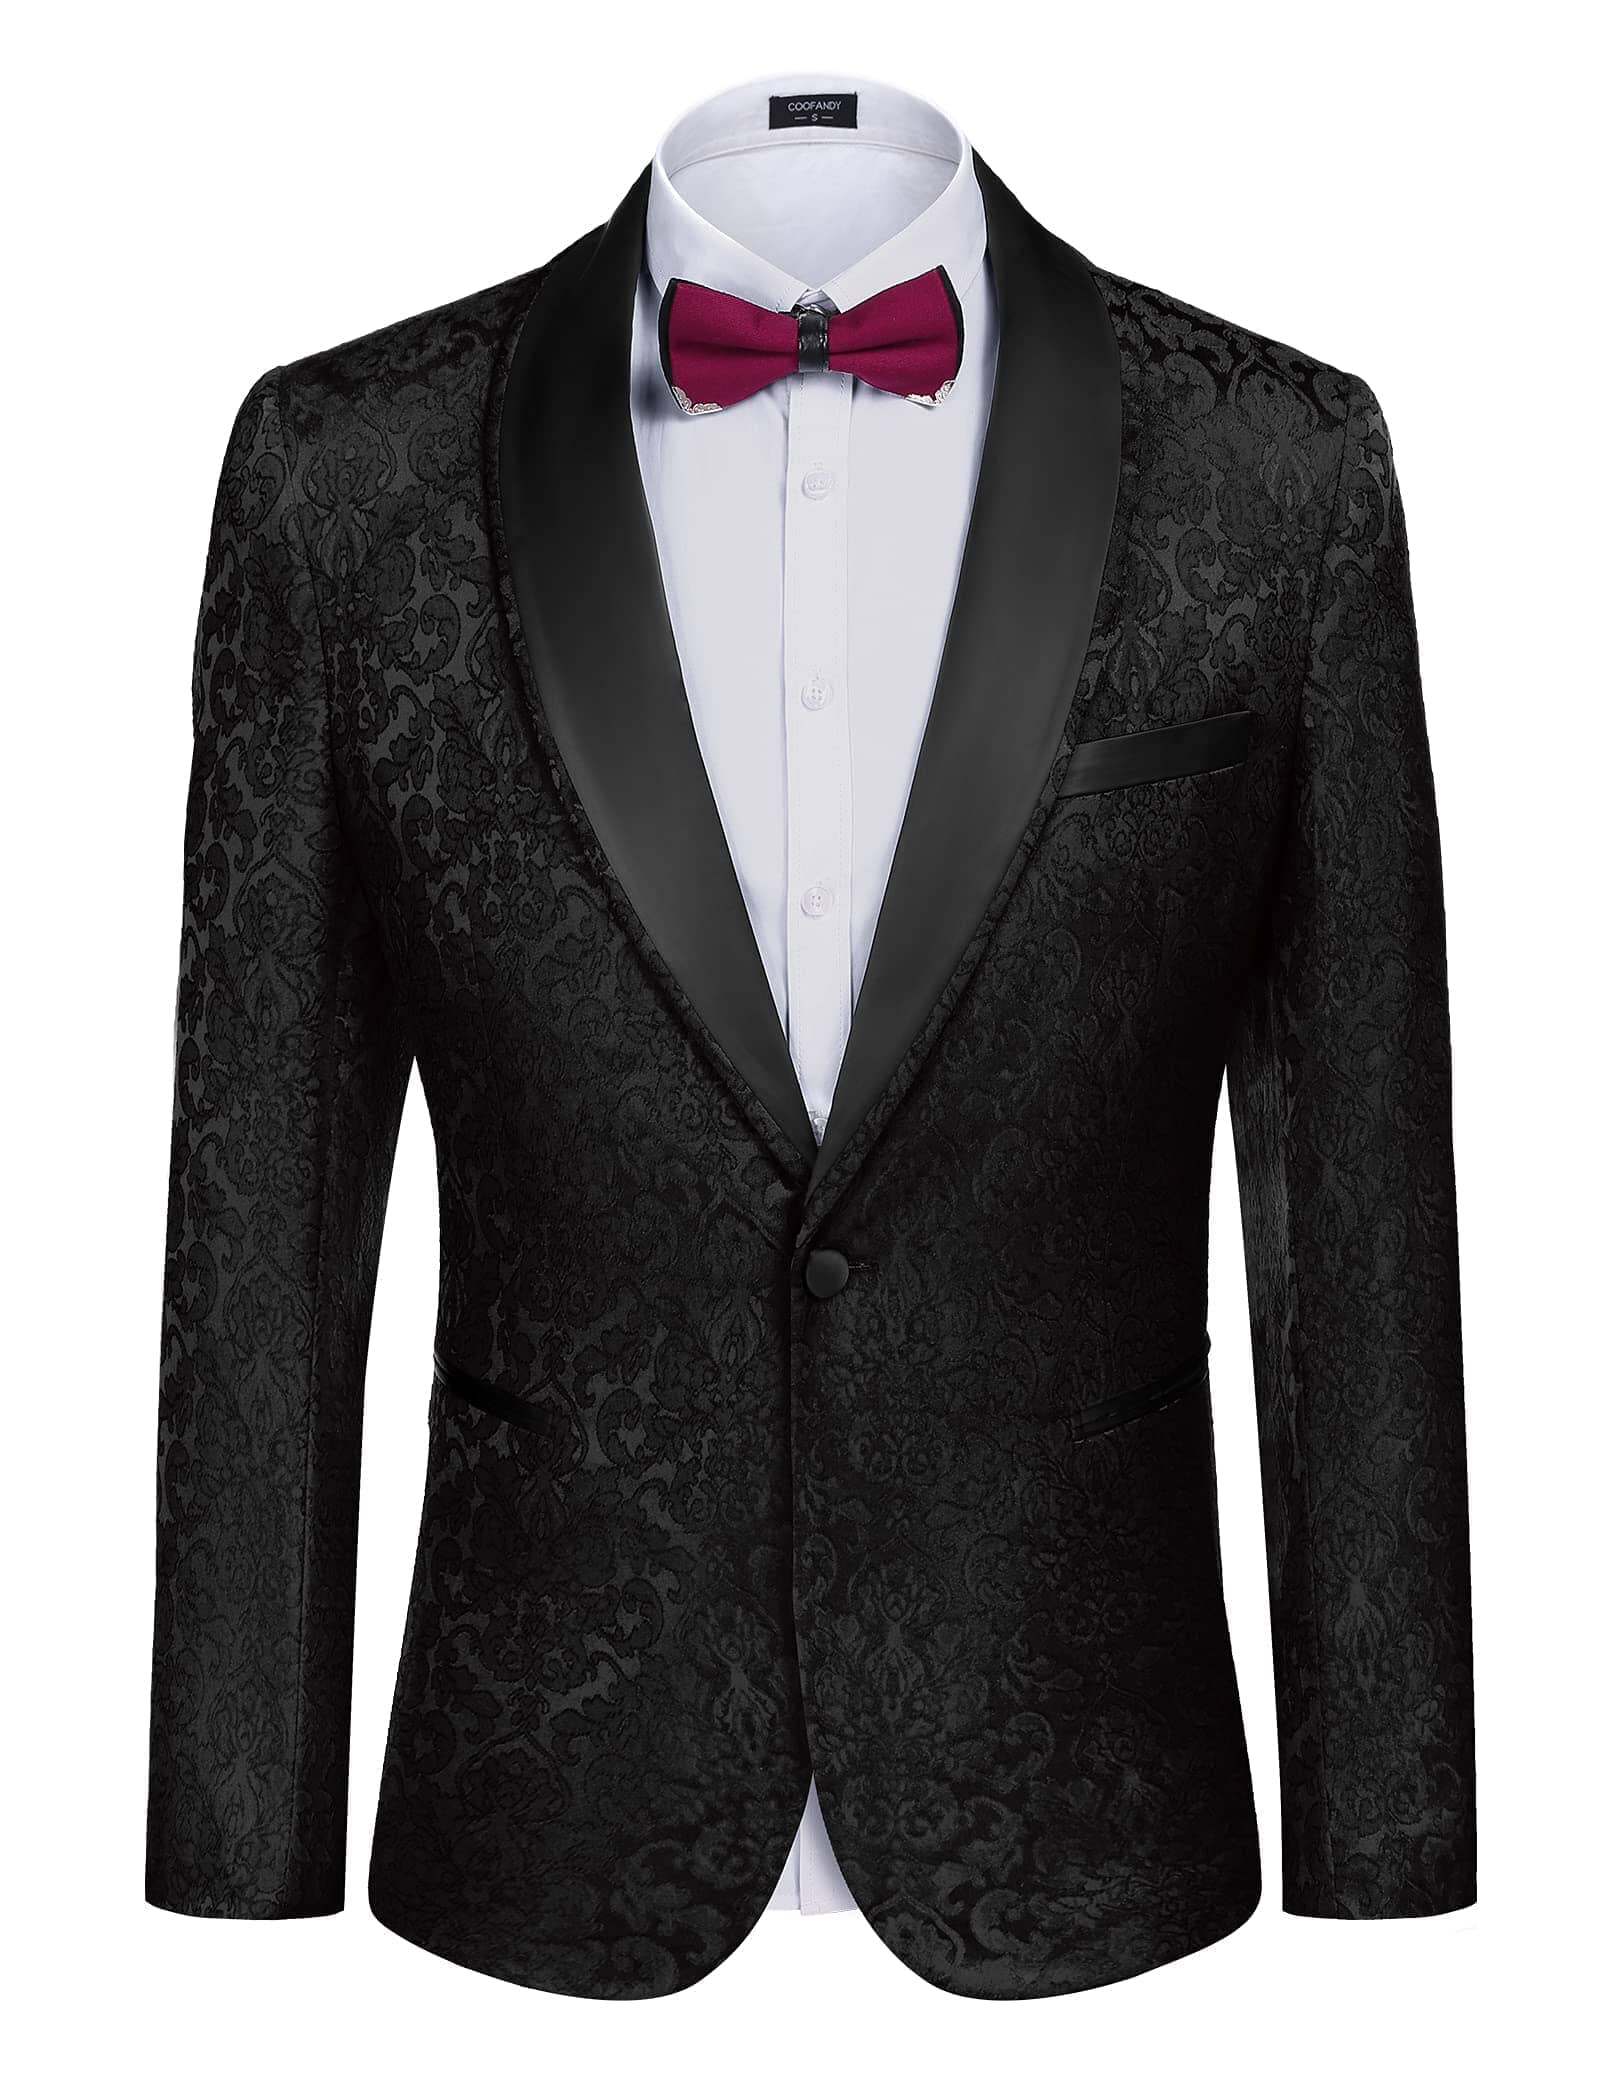 Floral Suit Jacket - Premium Material | Stylish & Versatile Design ...